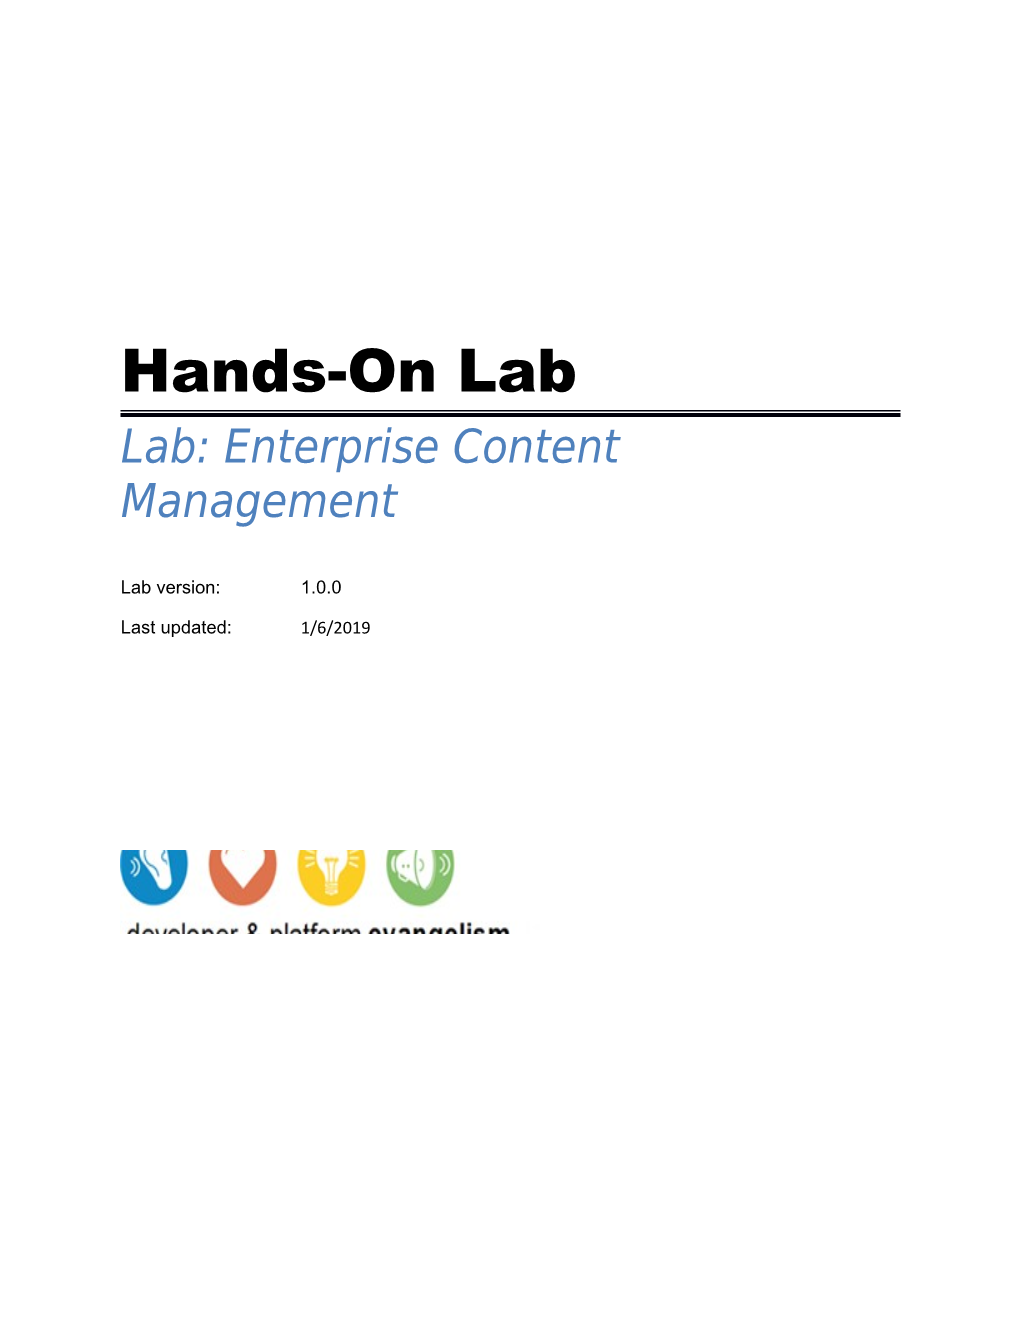 Enterprise Content Management Lab